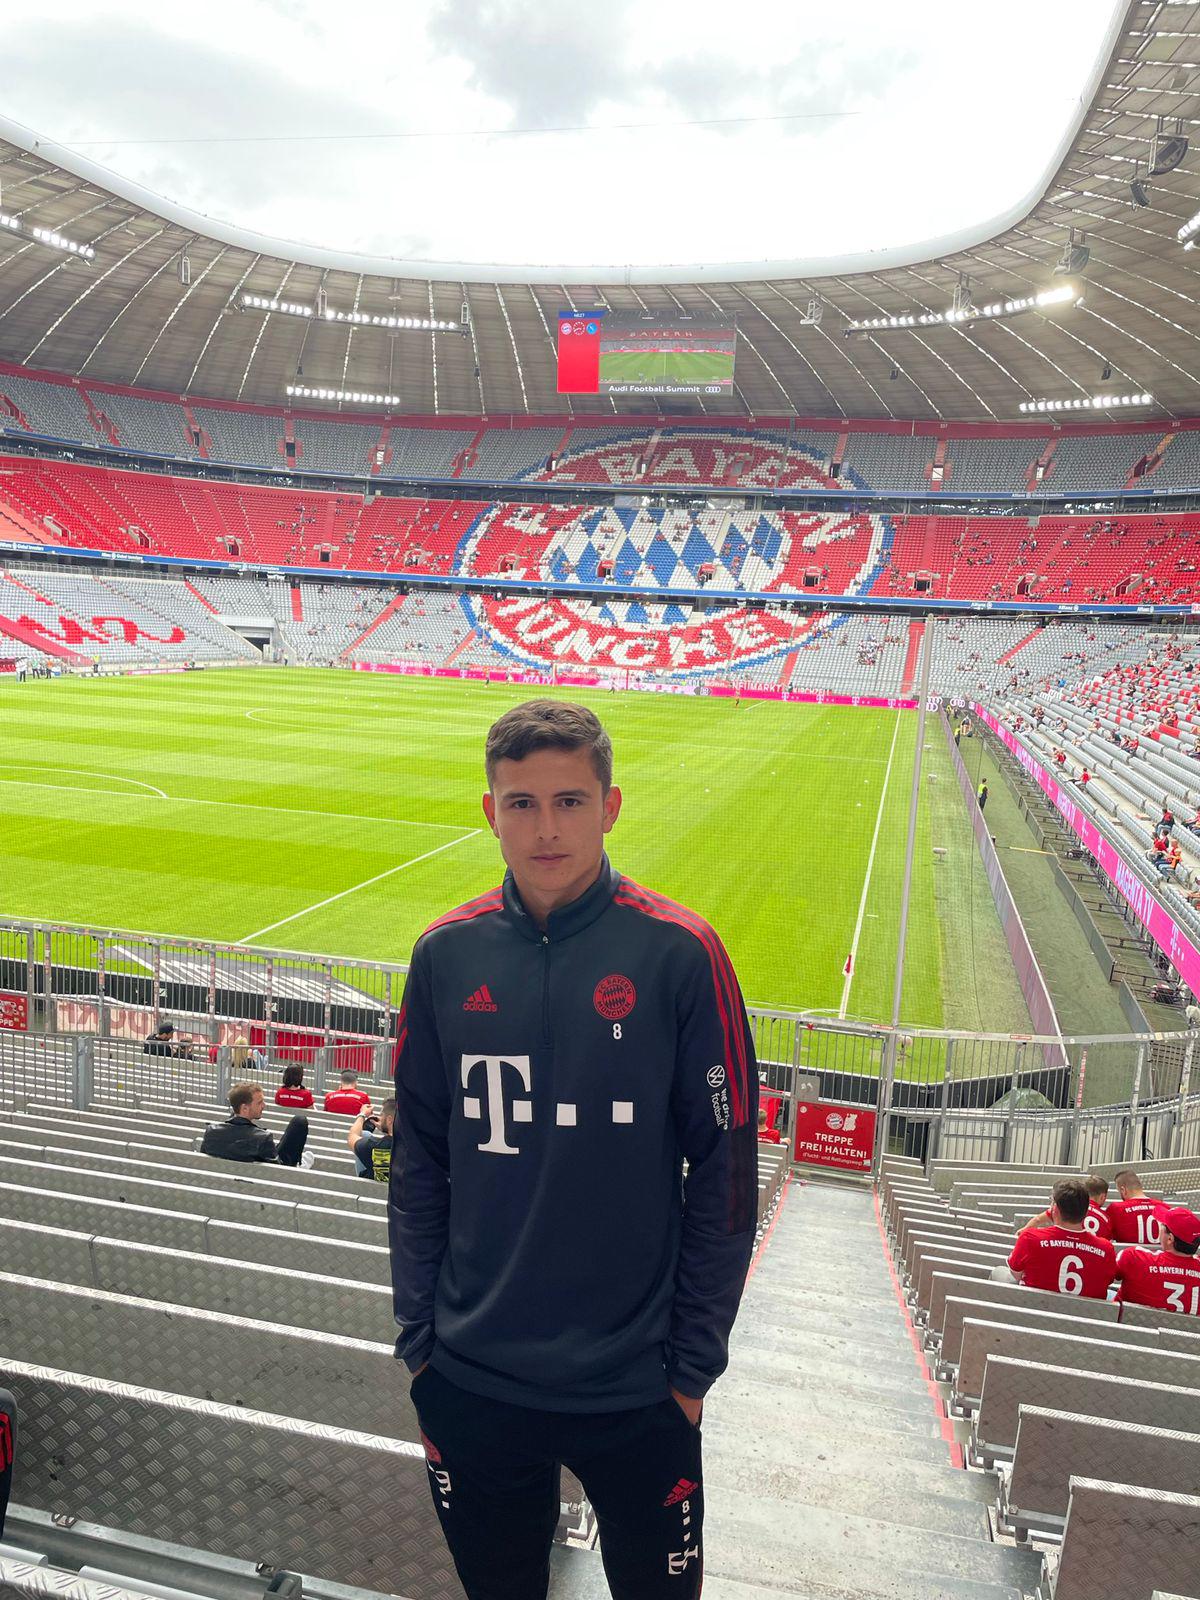 $!Manuel Trinidad Aguilar Peña, de un inicio complicado por entrar al mundo del futbol a mostrarse con el Bayern Múnich